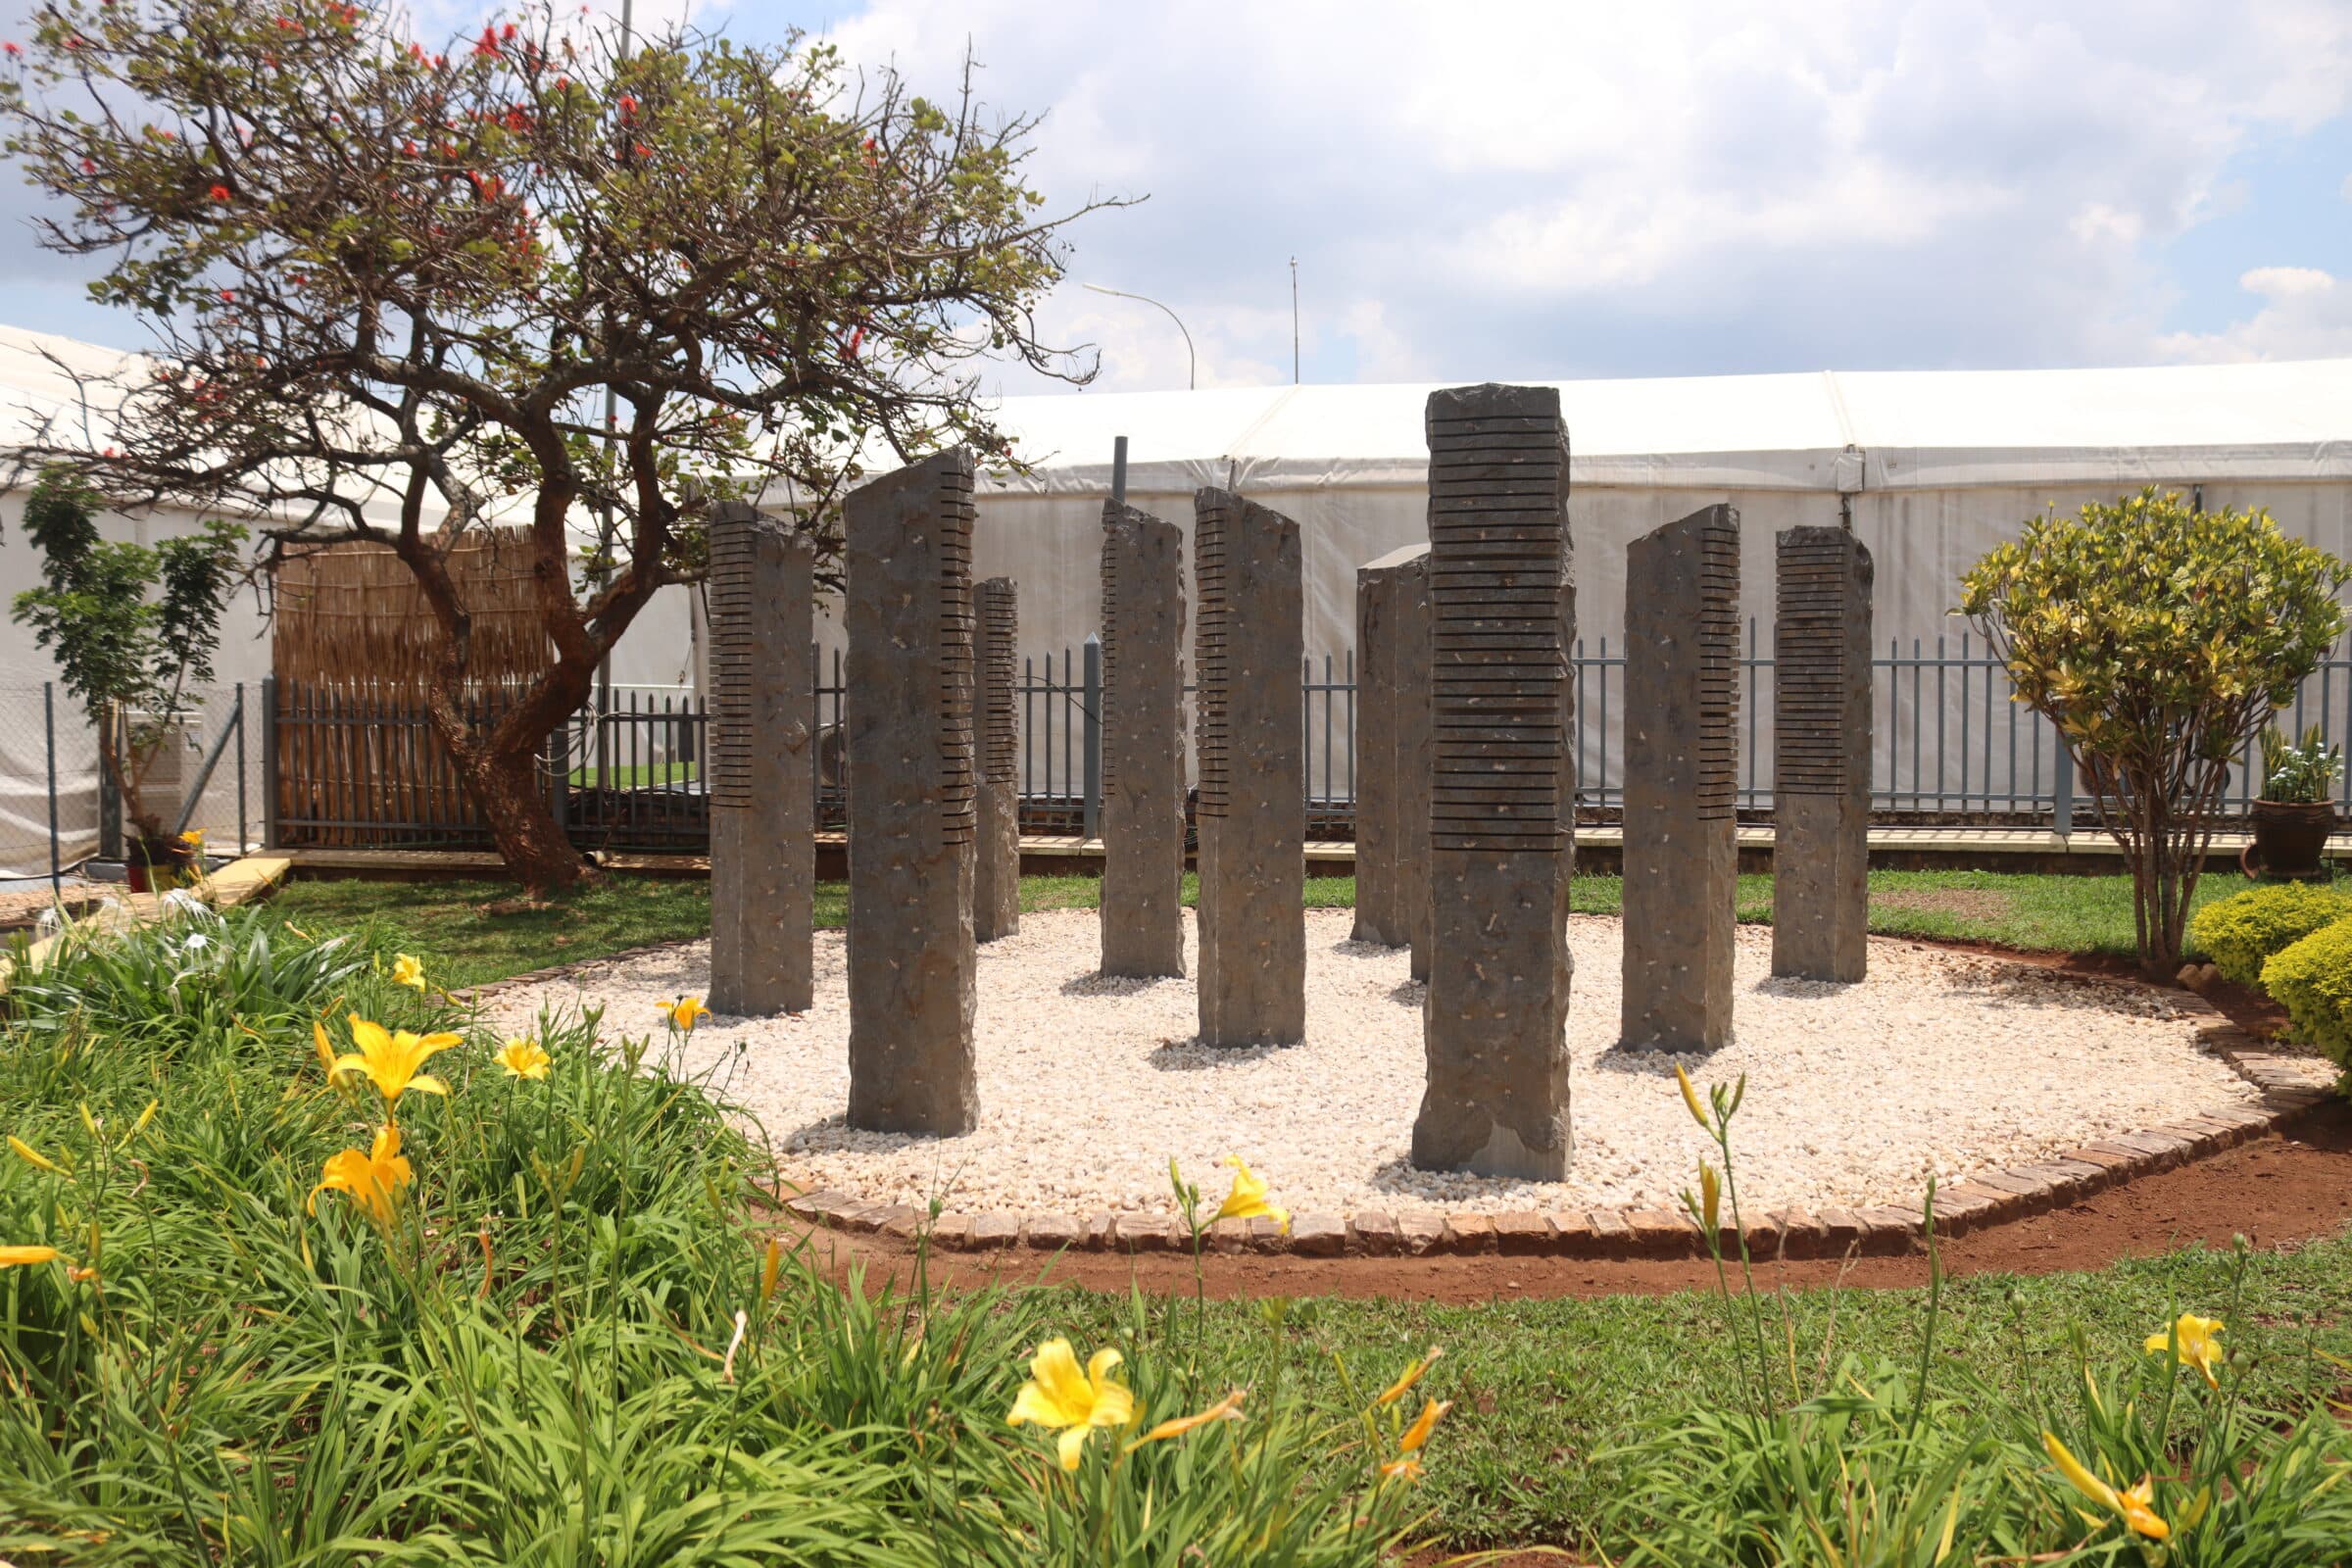 De betonnen kolommen ter nagedachtenis aan de belgische UN soldaten